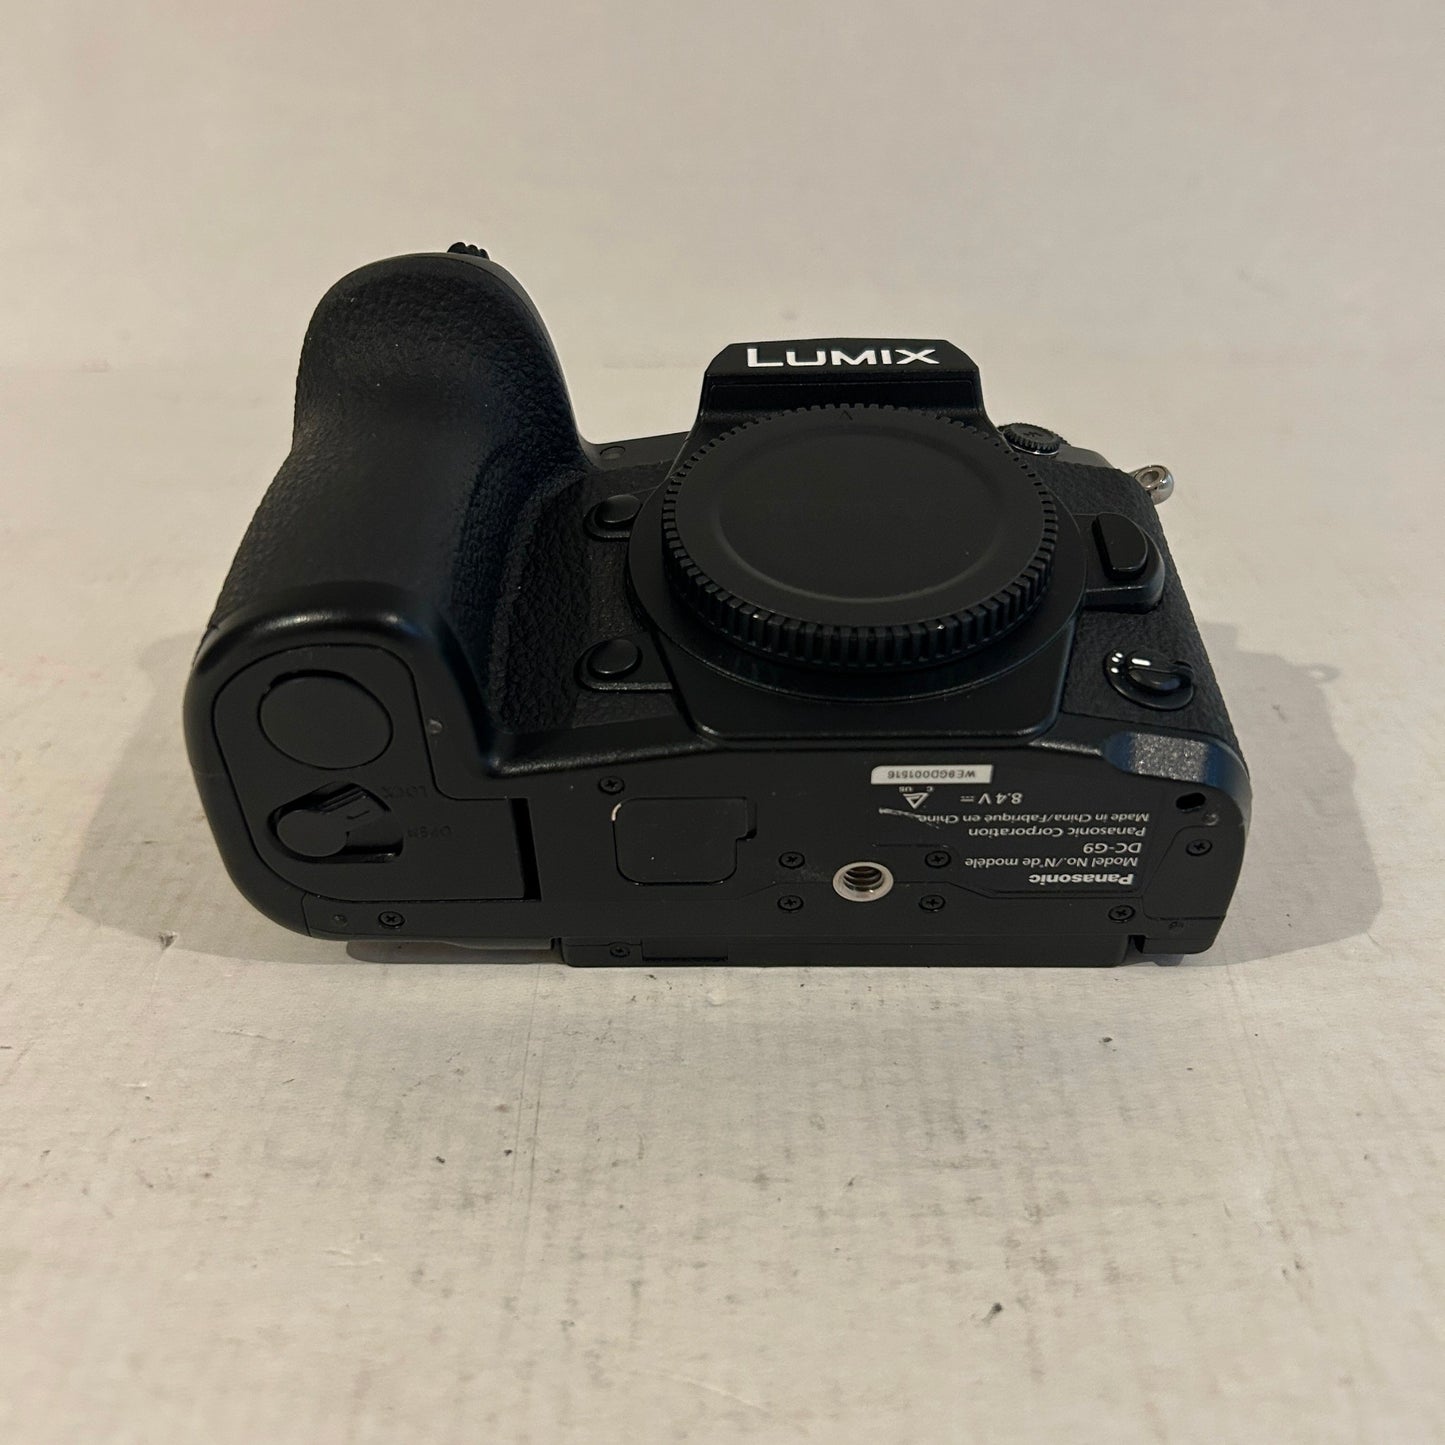 Panasonic G9 Mirrorless Digital Camera - DC-G9